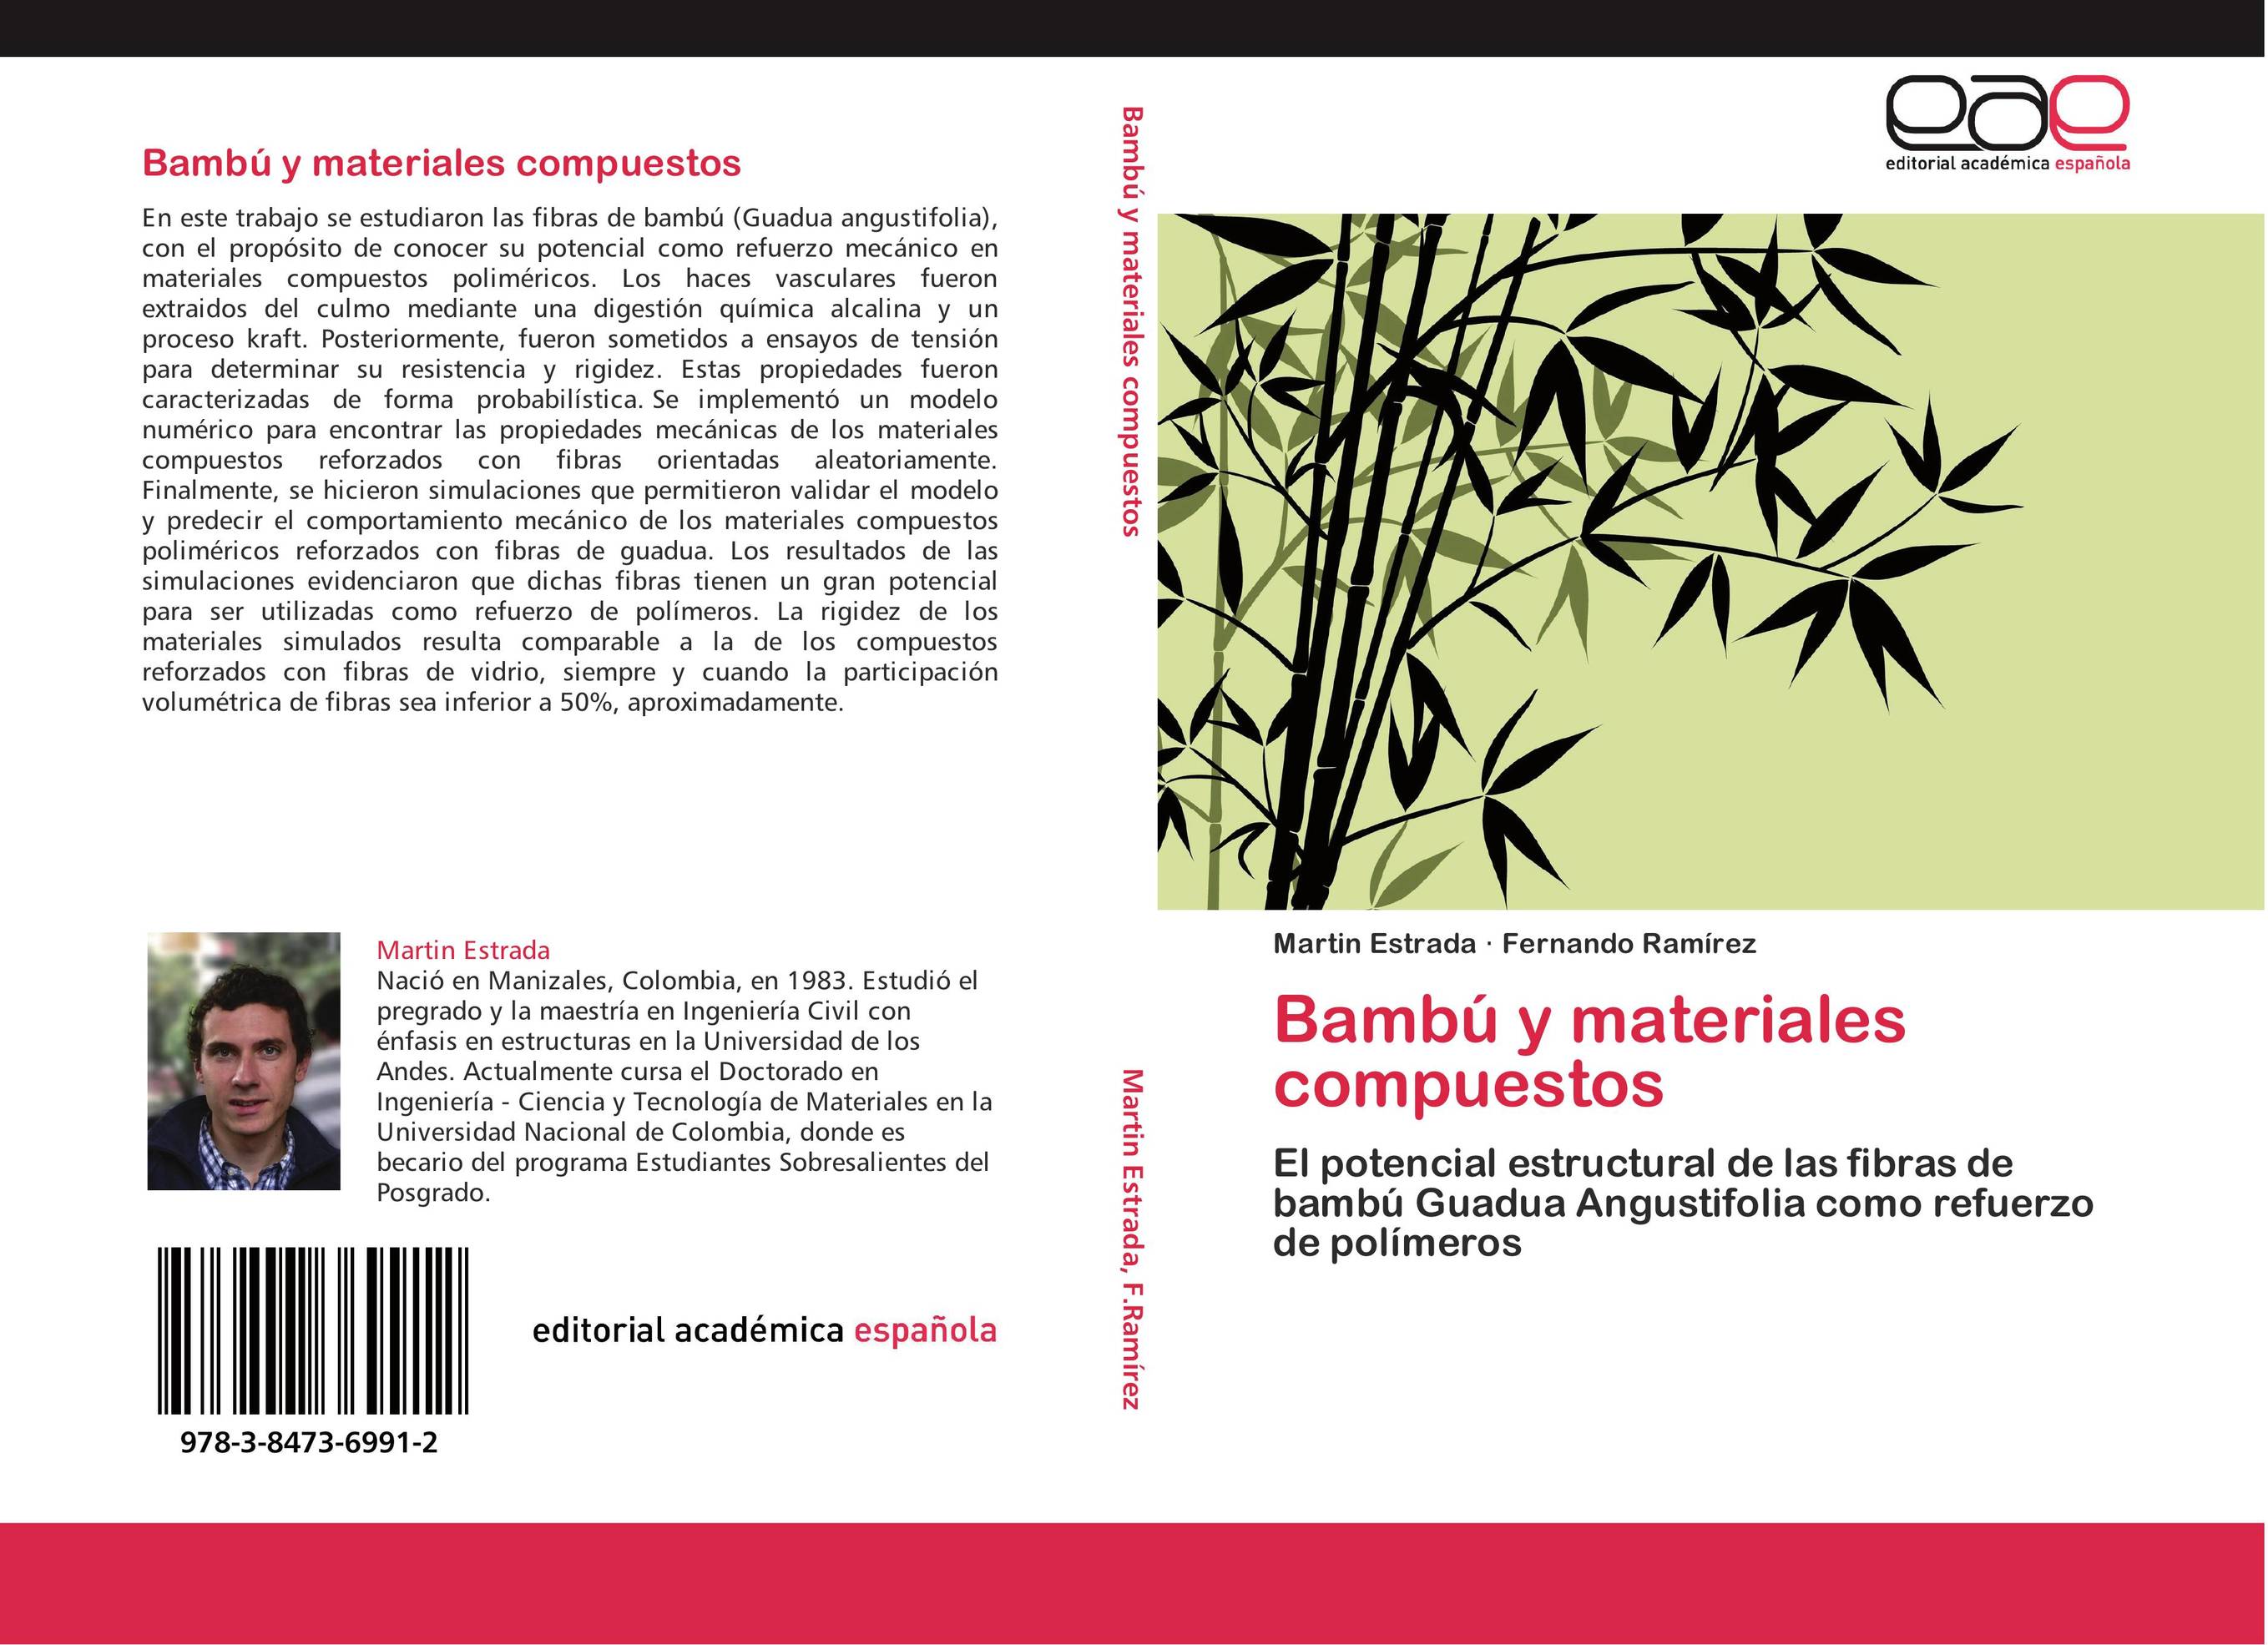 Bambú y materiales compuestos